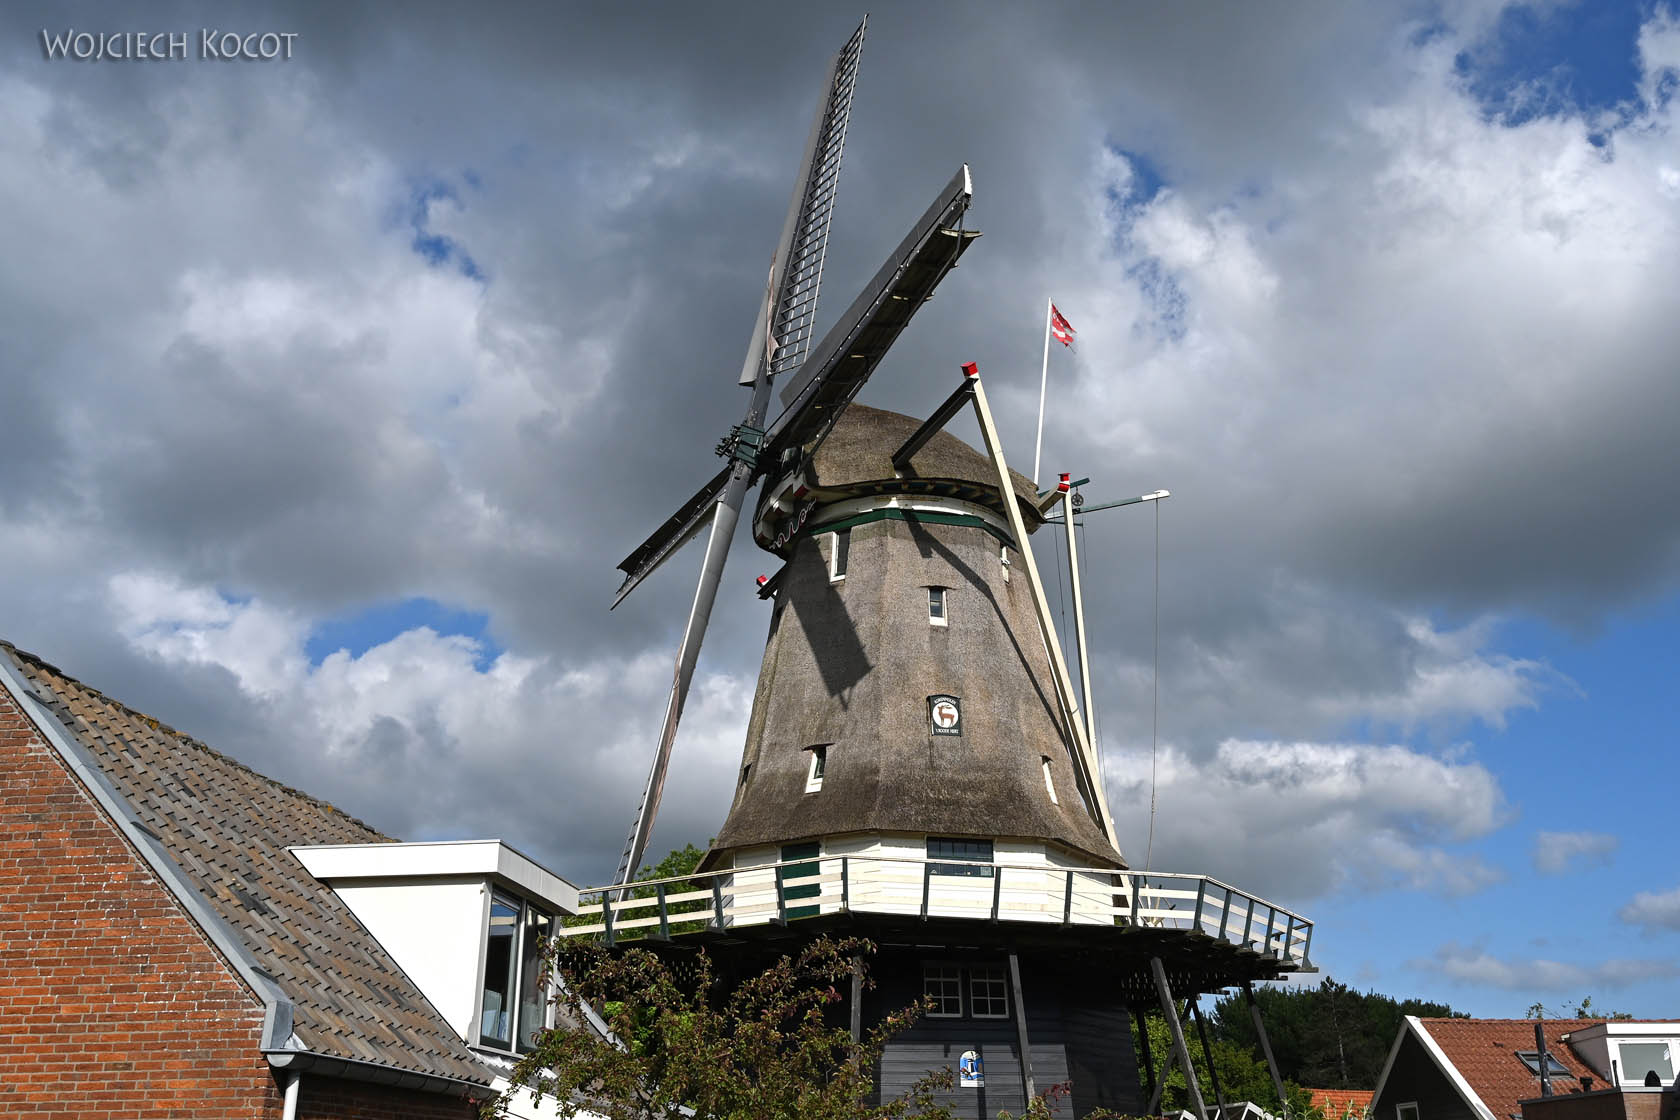 Pic3005-Alkmaar-wiatrak w sąsiedztwie